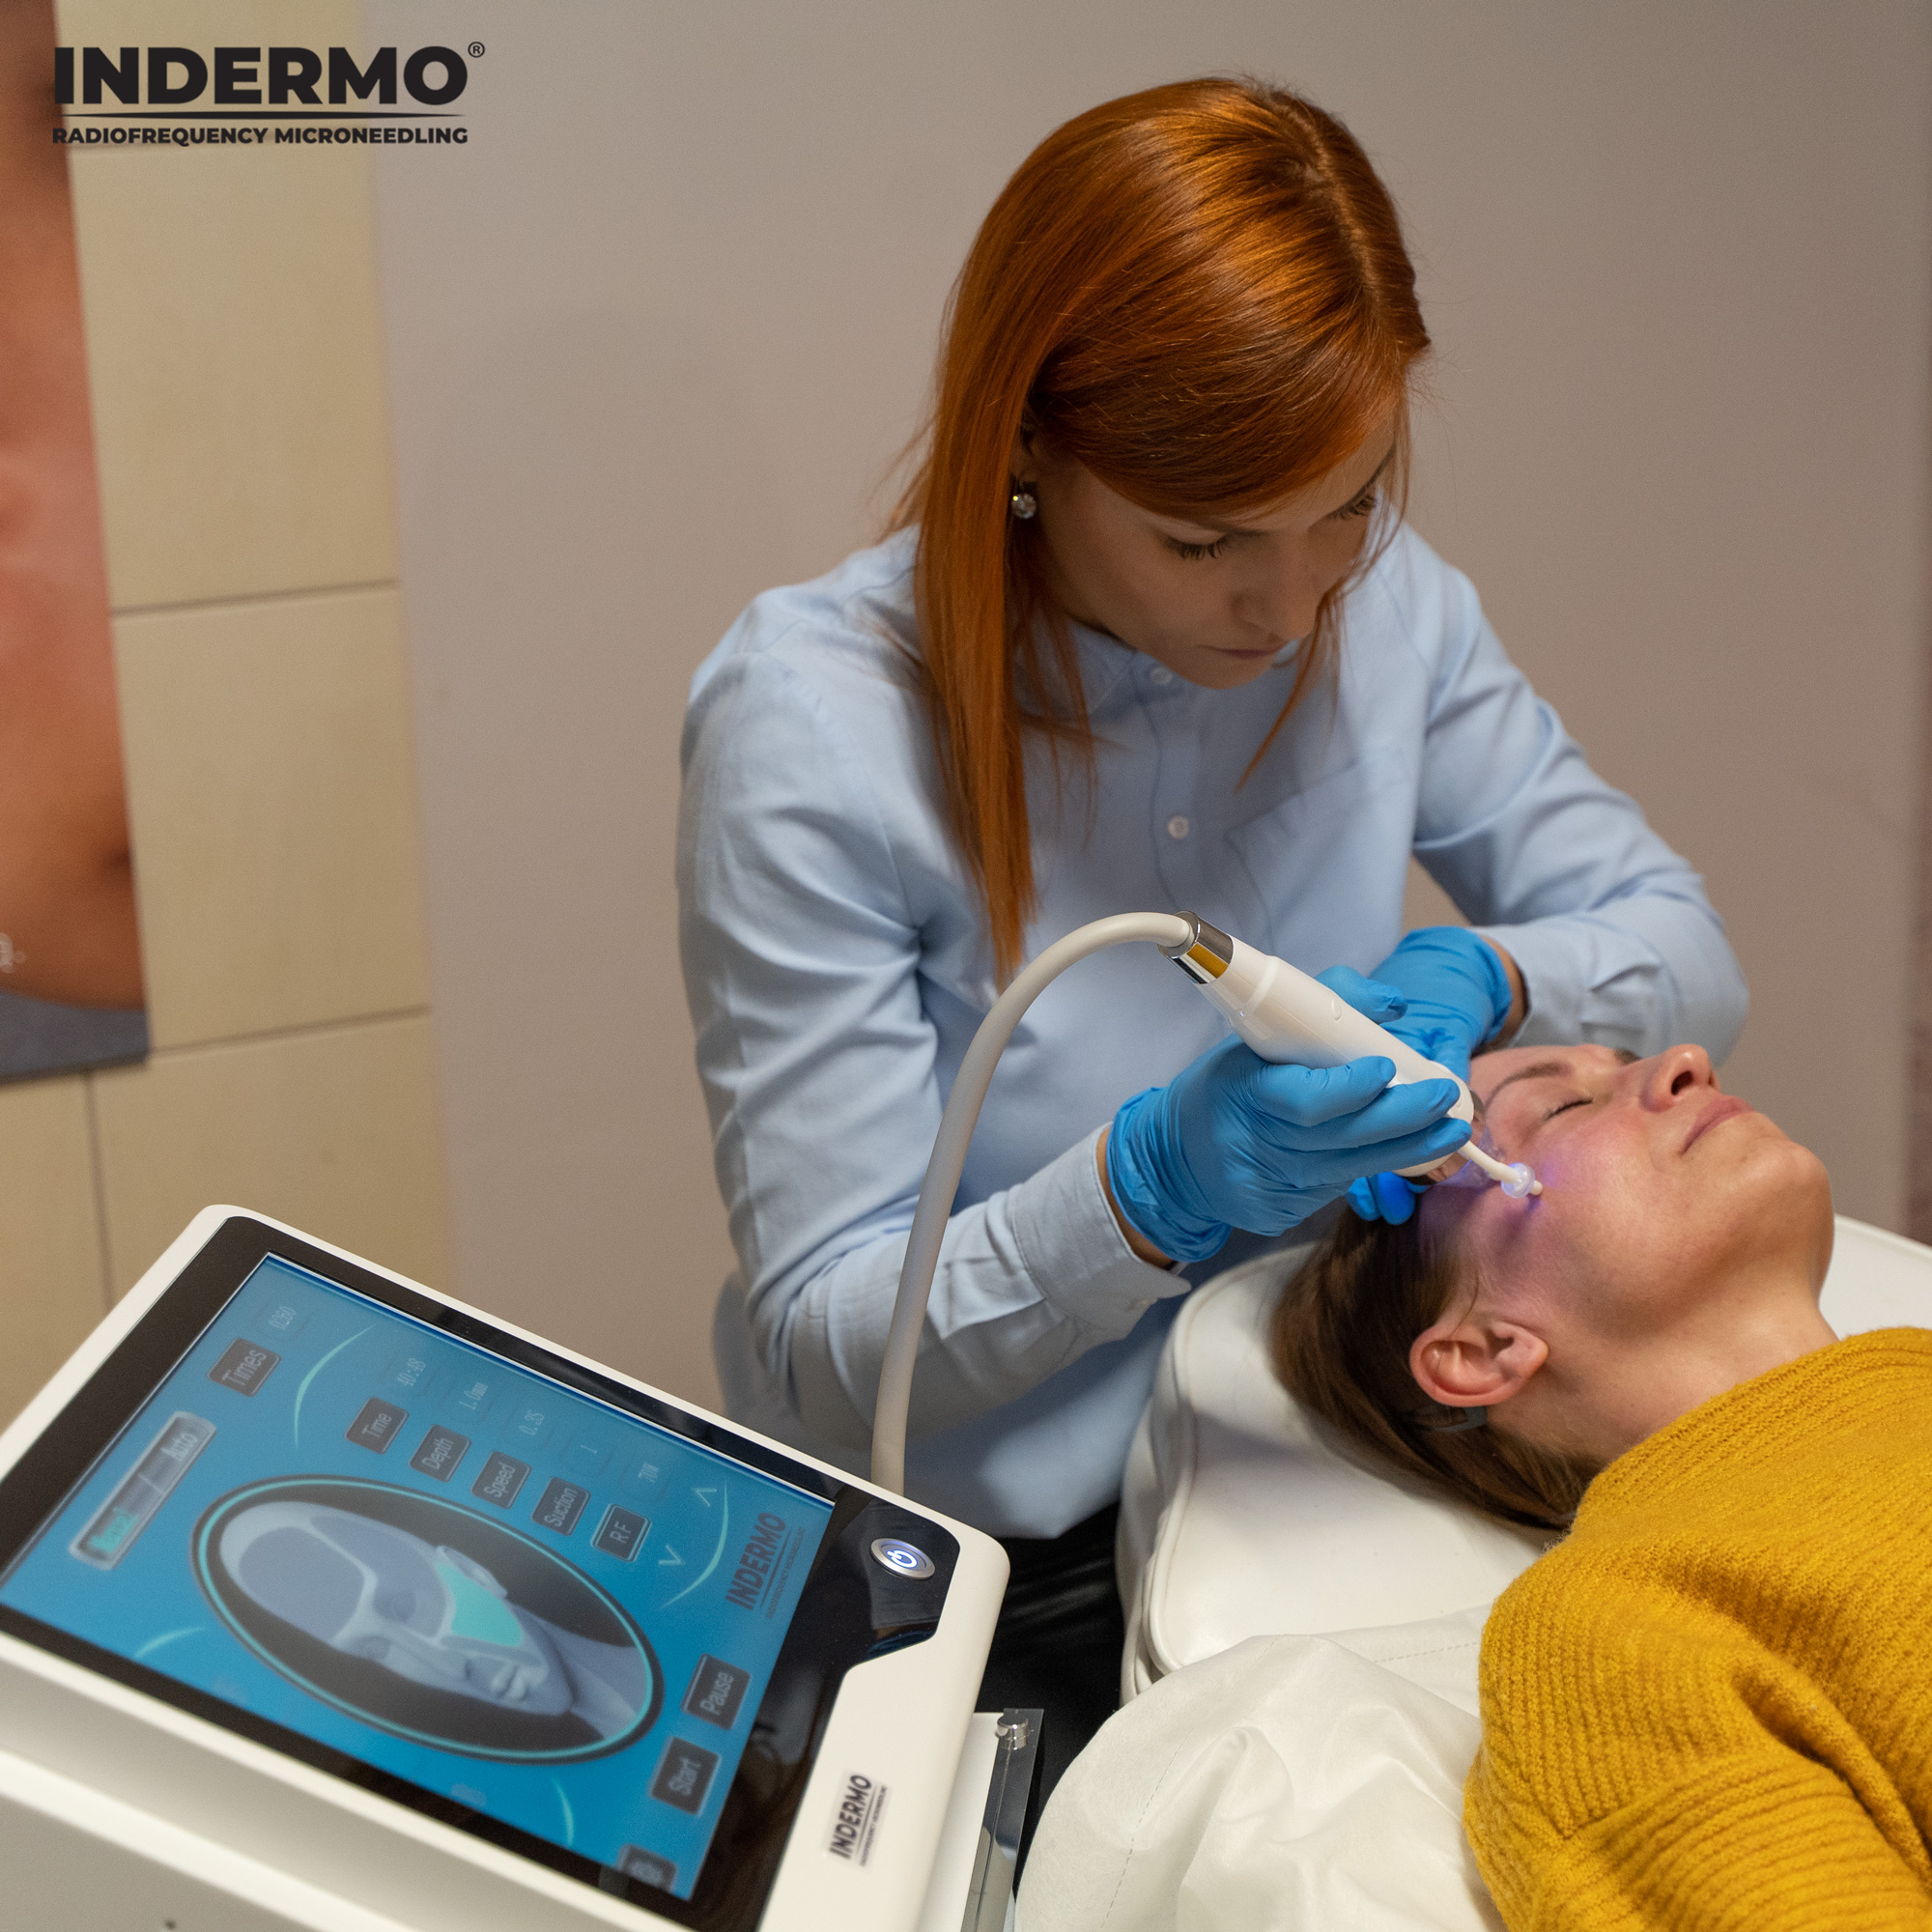 Maszyna Indermo Radiofrequency Microneedling wyróżnia się na rynku kosmetologicznym manualnym i automatycznym trybem zabiegowym